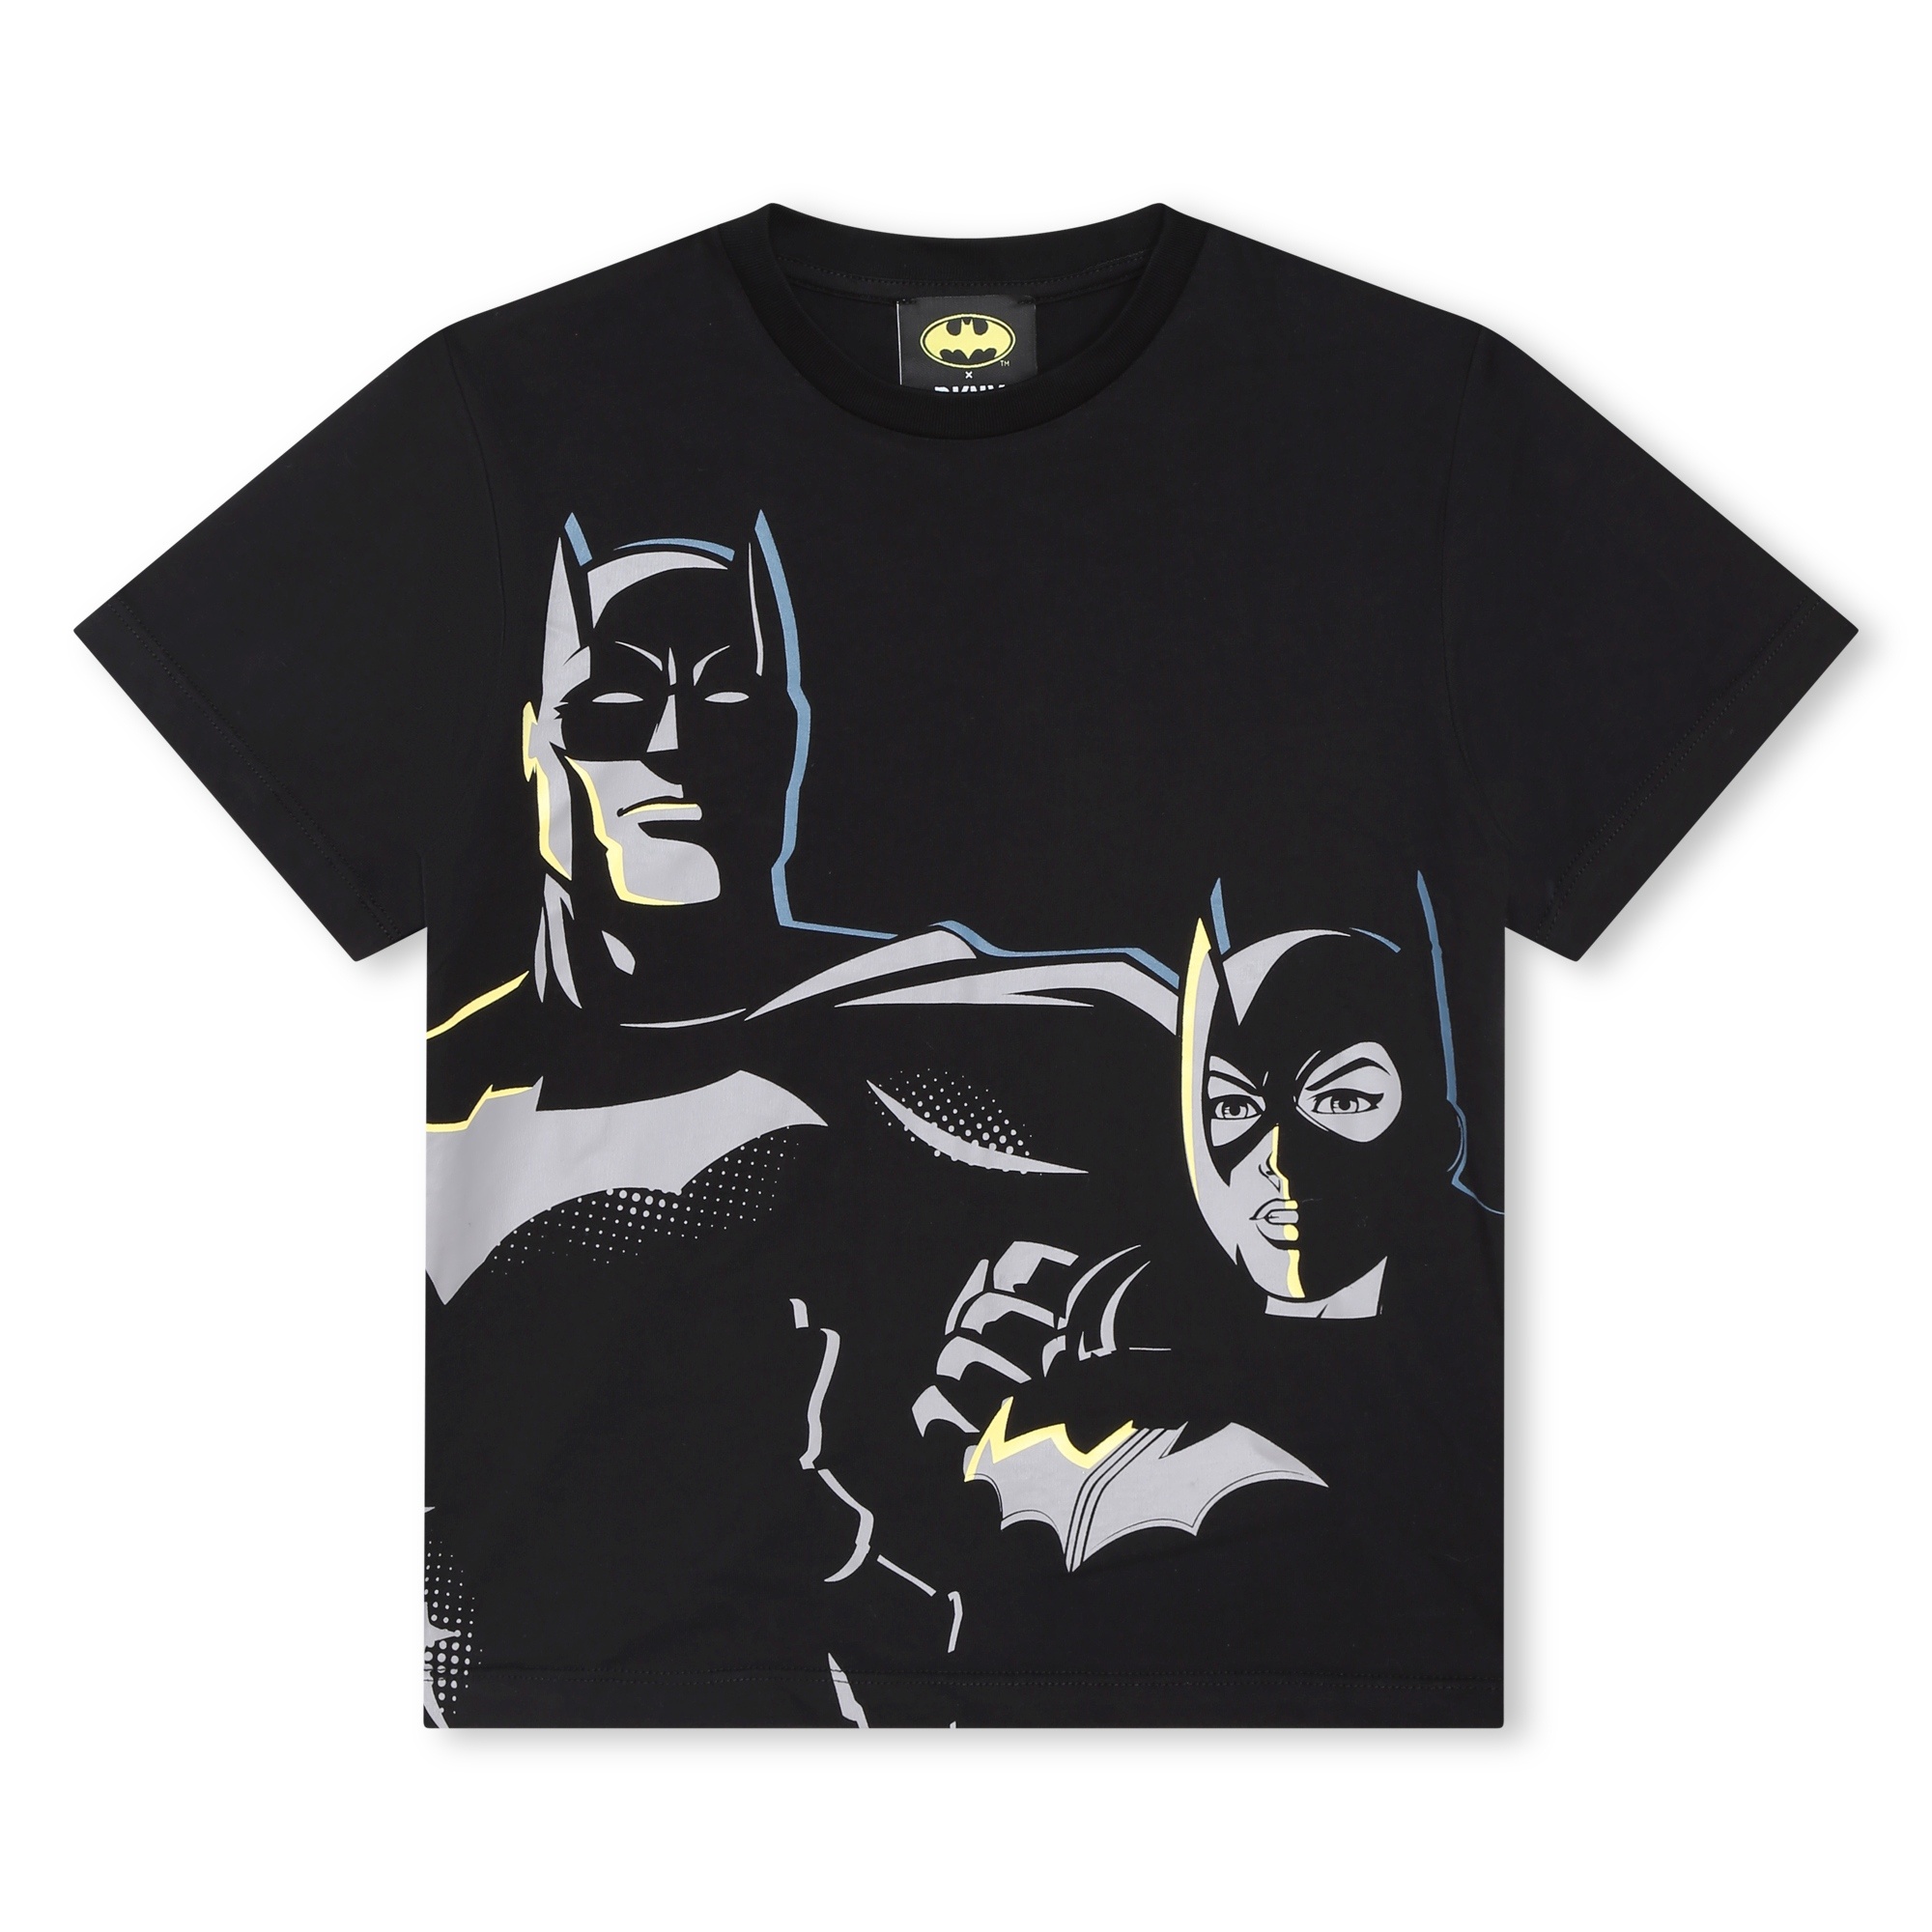 Stylisches DKNY Kids Batgirl Batman T-Shirt - unisex & Coolkids-Store